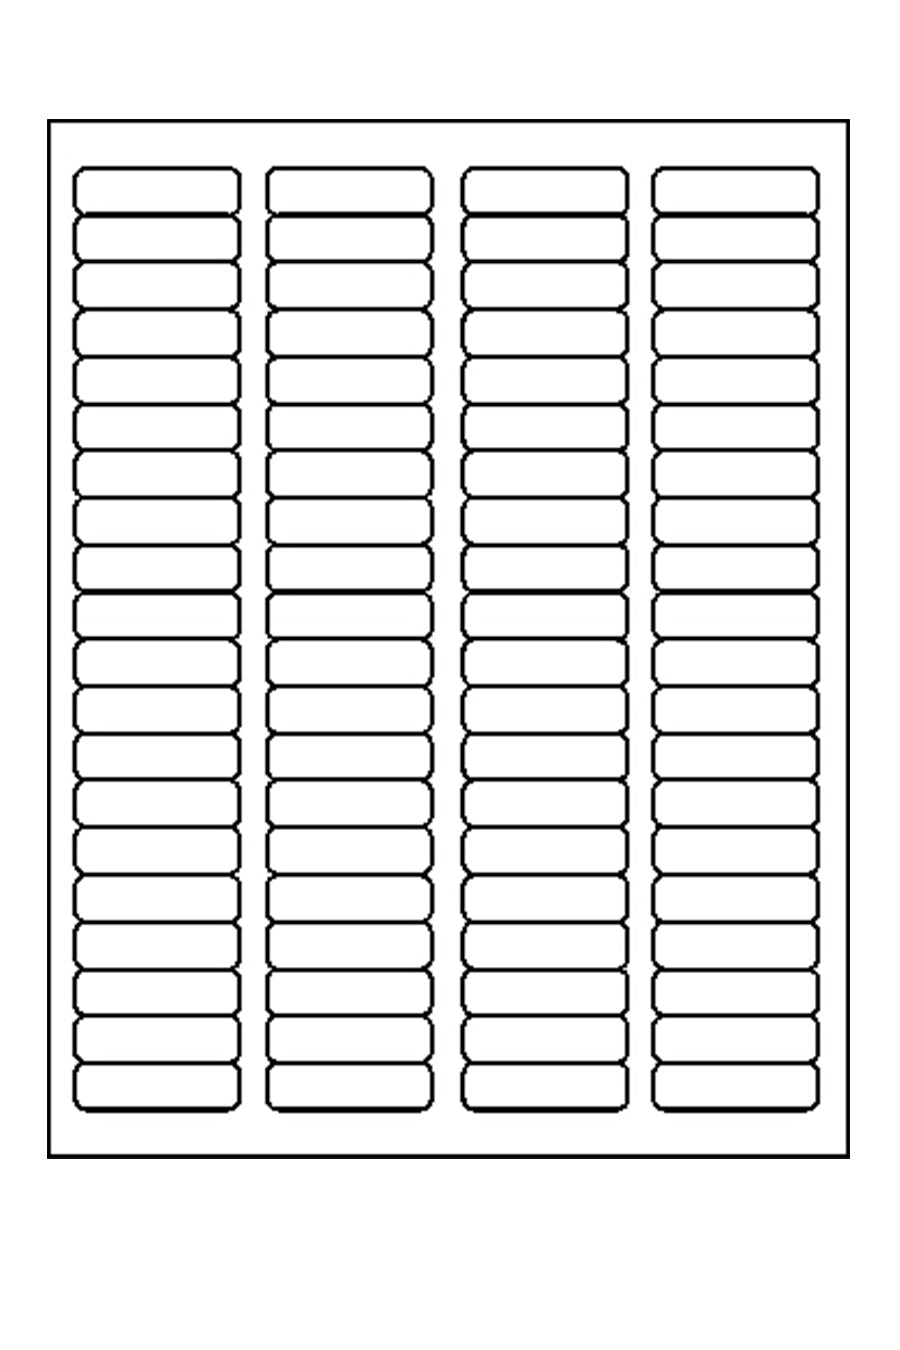 Laser/Ink Jet White Return Address Labels, 1/2" x 1-3/4", 80/Sheet, 20000 Labels/Bx